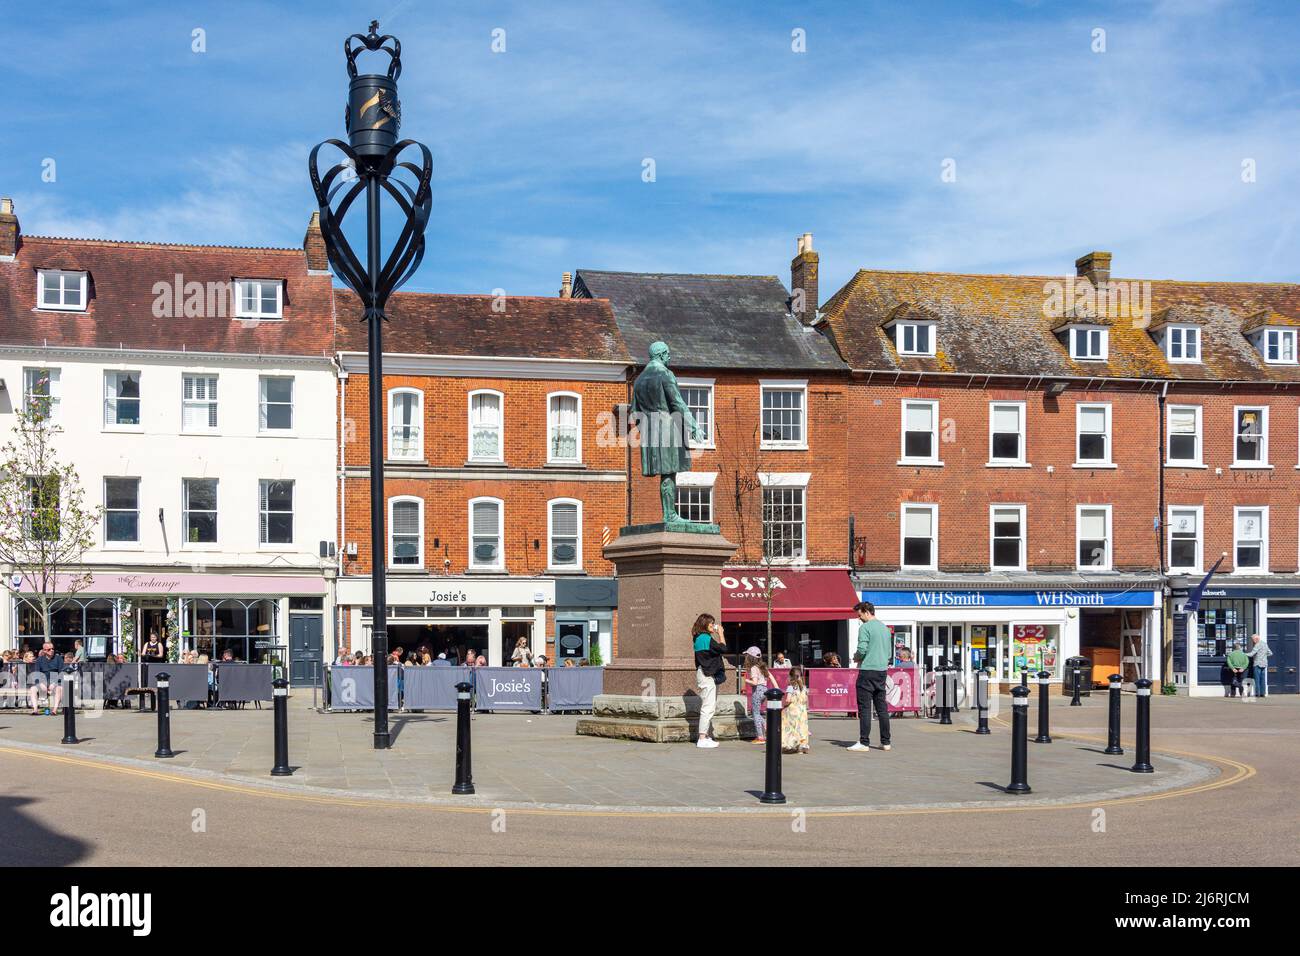 Pavement cafes, Market Place, Romsey, Hampshire, England, United Kingdom Stock Photo